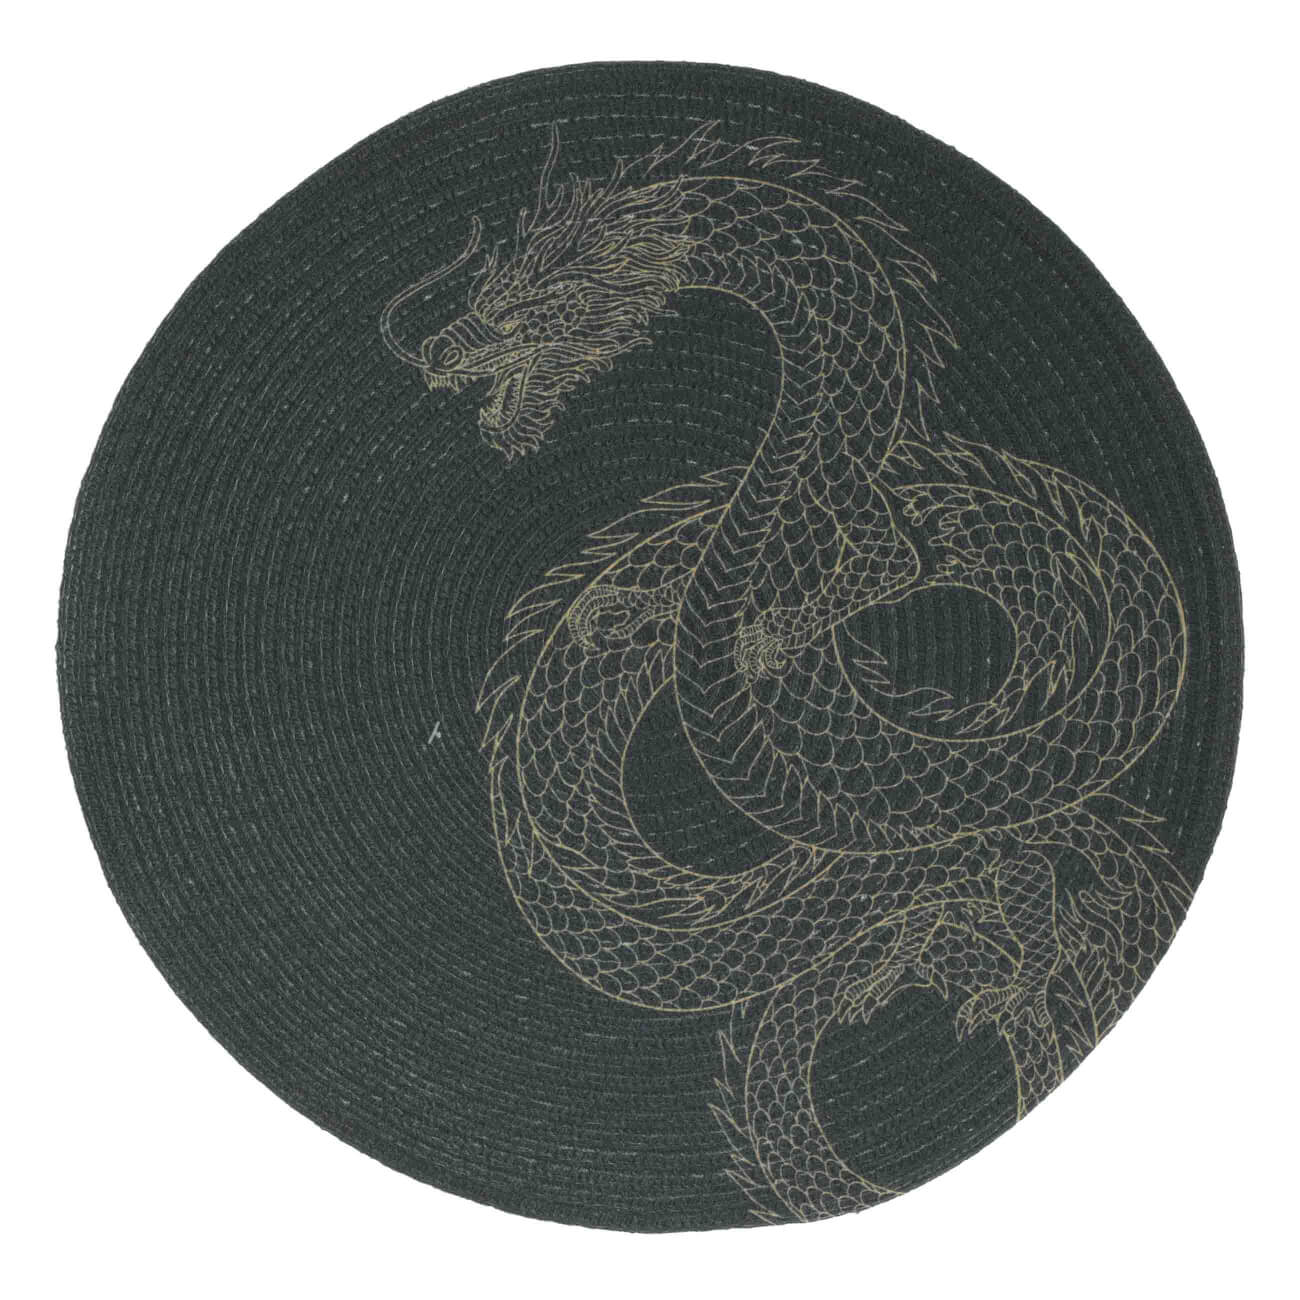 Салфетка под приборы, 38 см, полиэстер, круглая, черная, Дракон, Rotary print изображение № 1